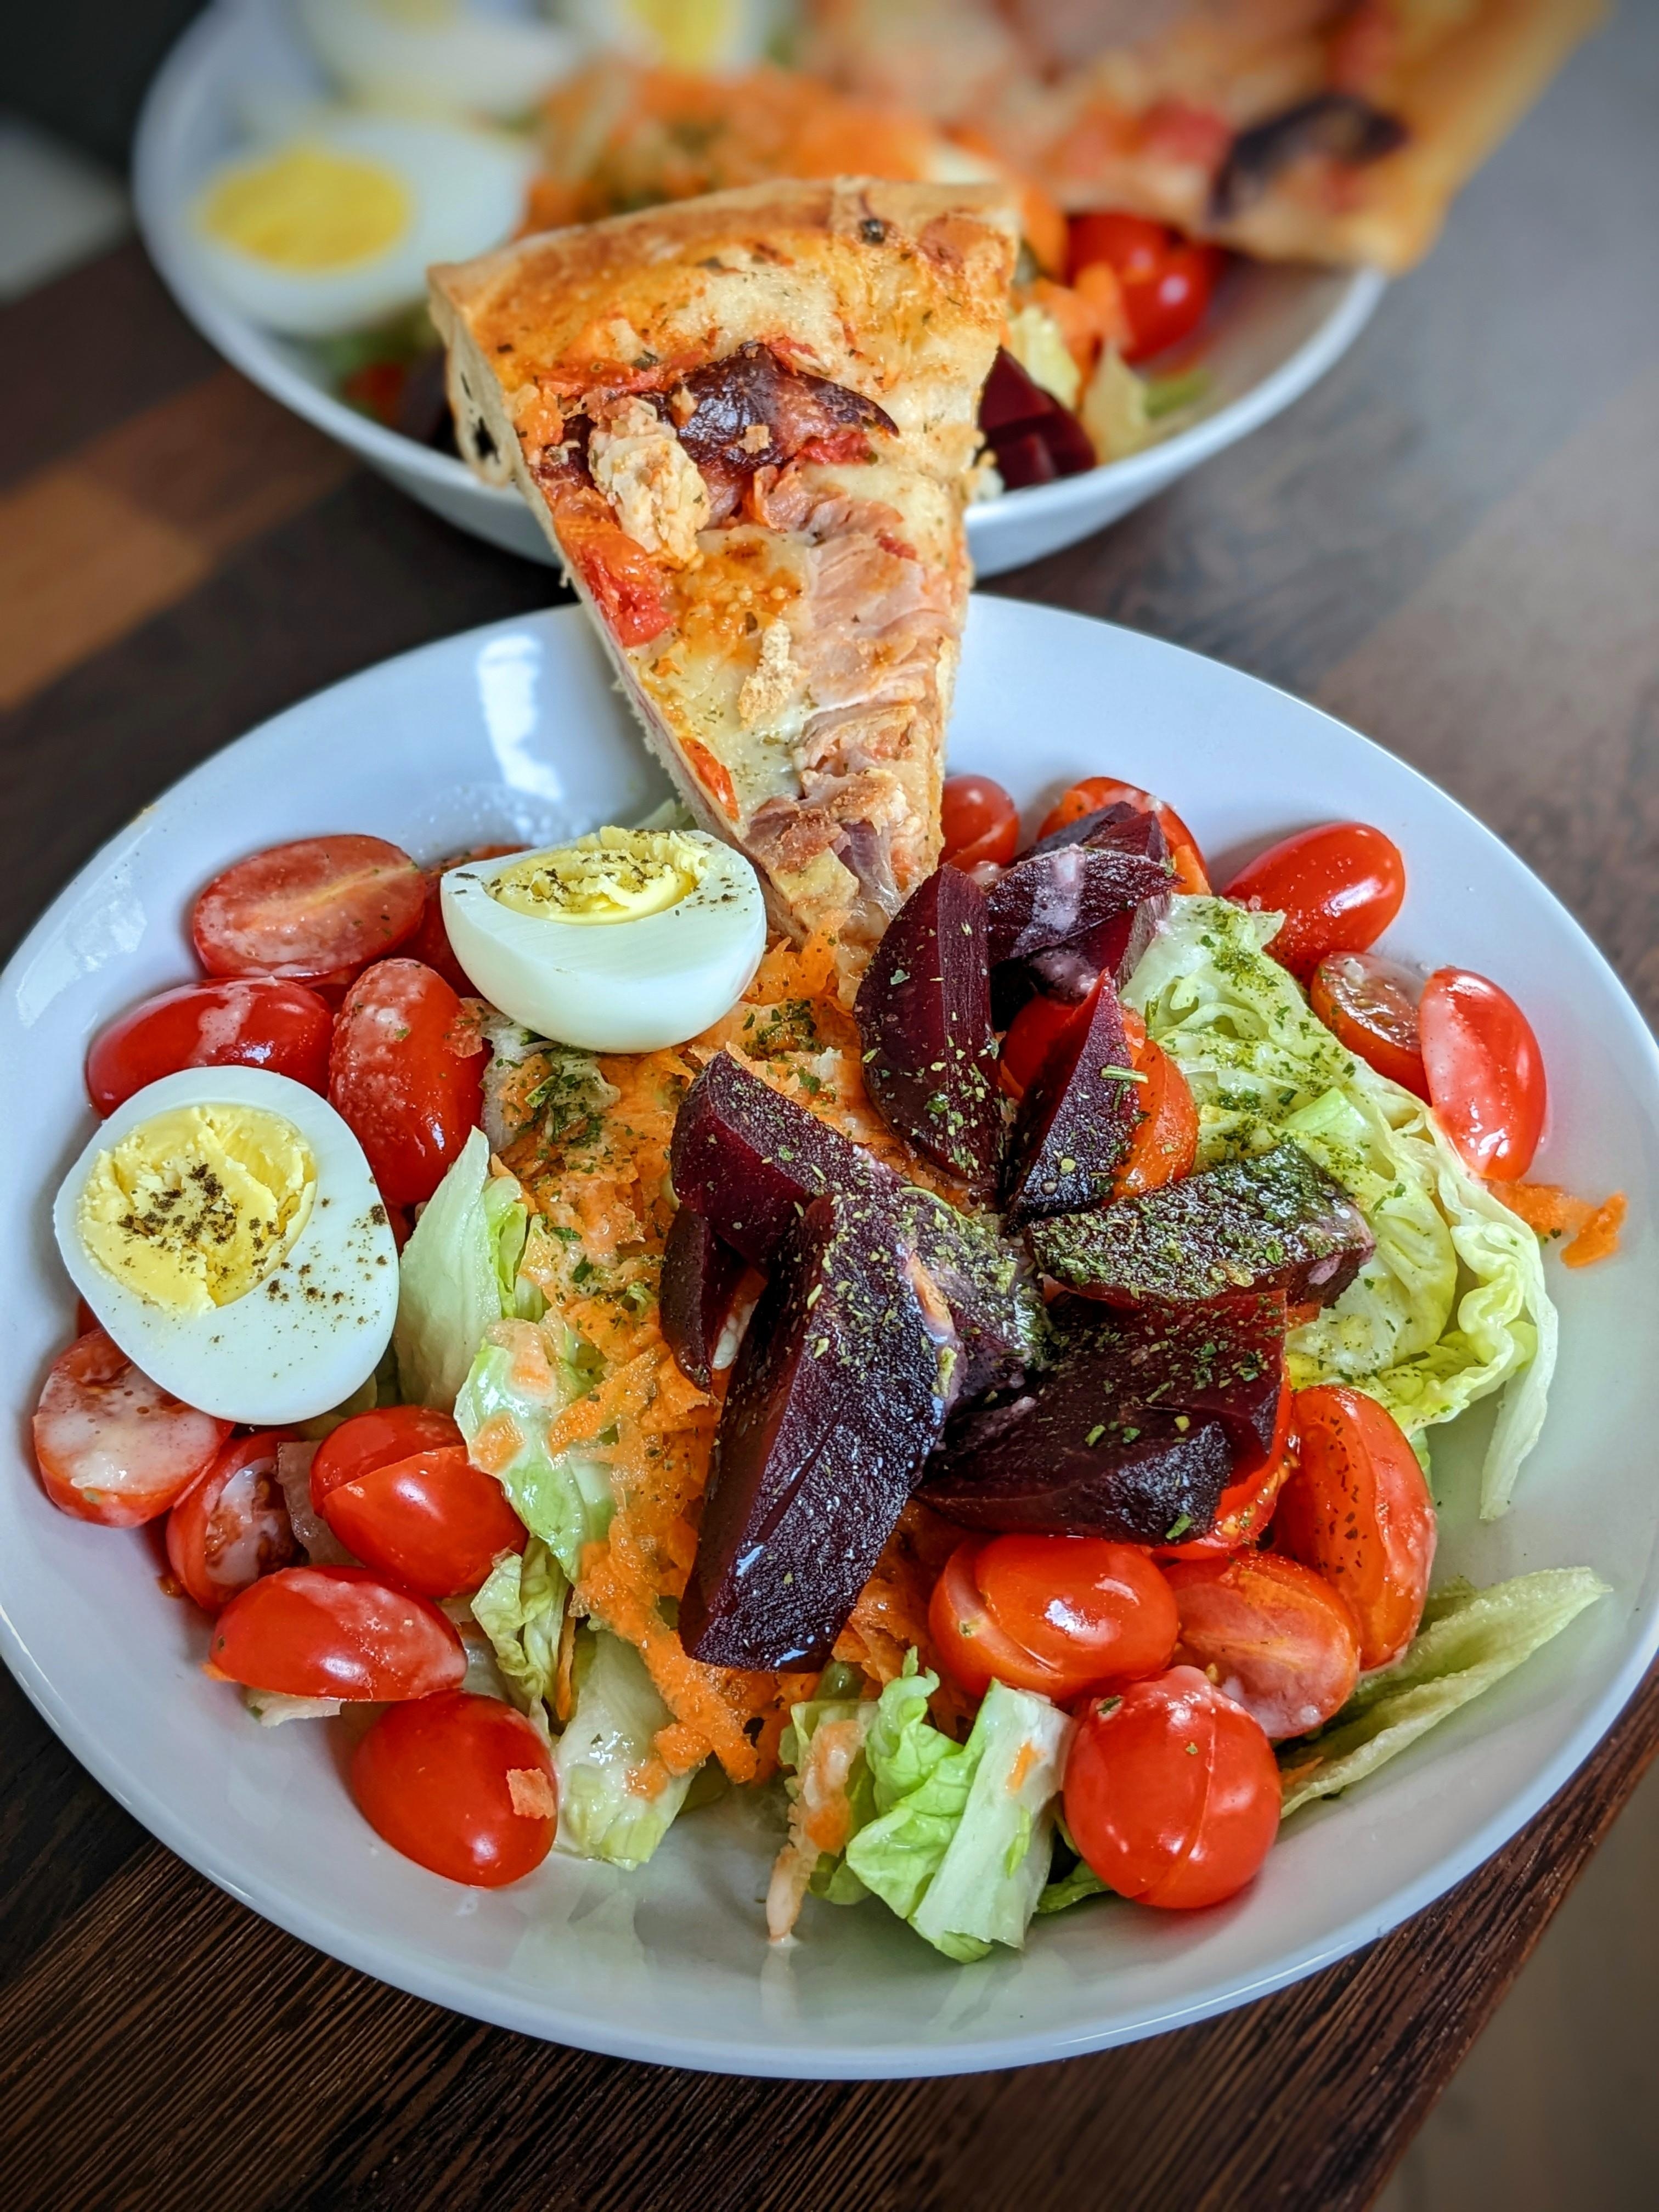 Hmmm kalte Pizza,Salätchen mit Tomaten, rote Beete,geraspelte Möhren, 🥕 Eier und Joghurt Dressing.
#lecker #food #salat